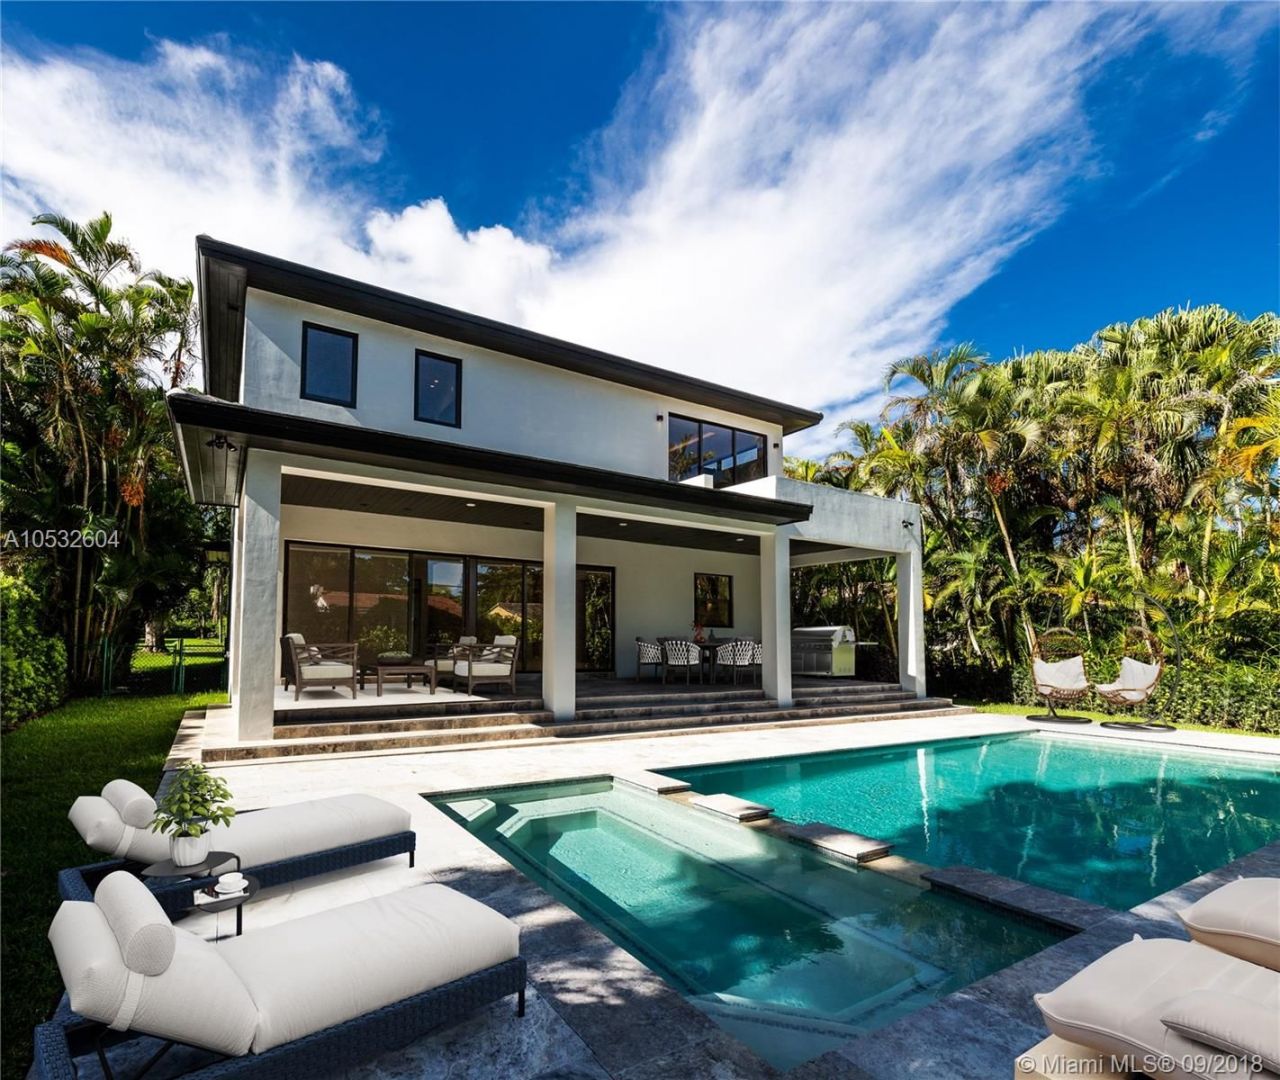 Villa in Miami, USA, 340 sq.m - picture 1